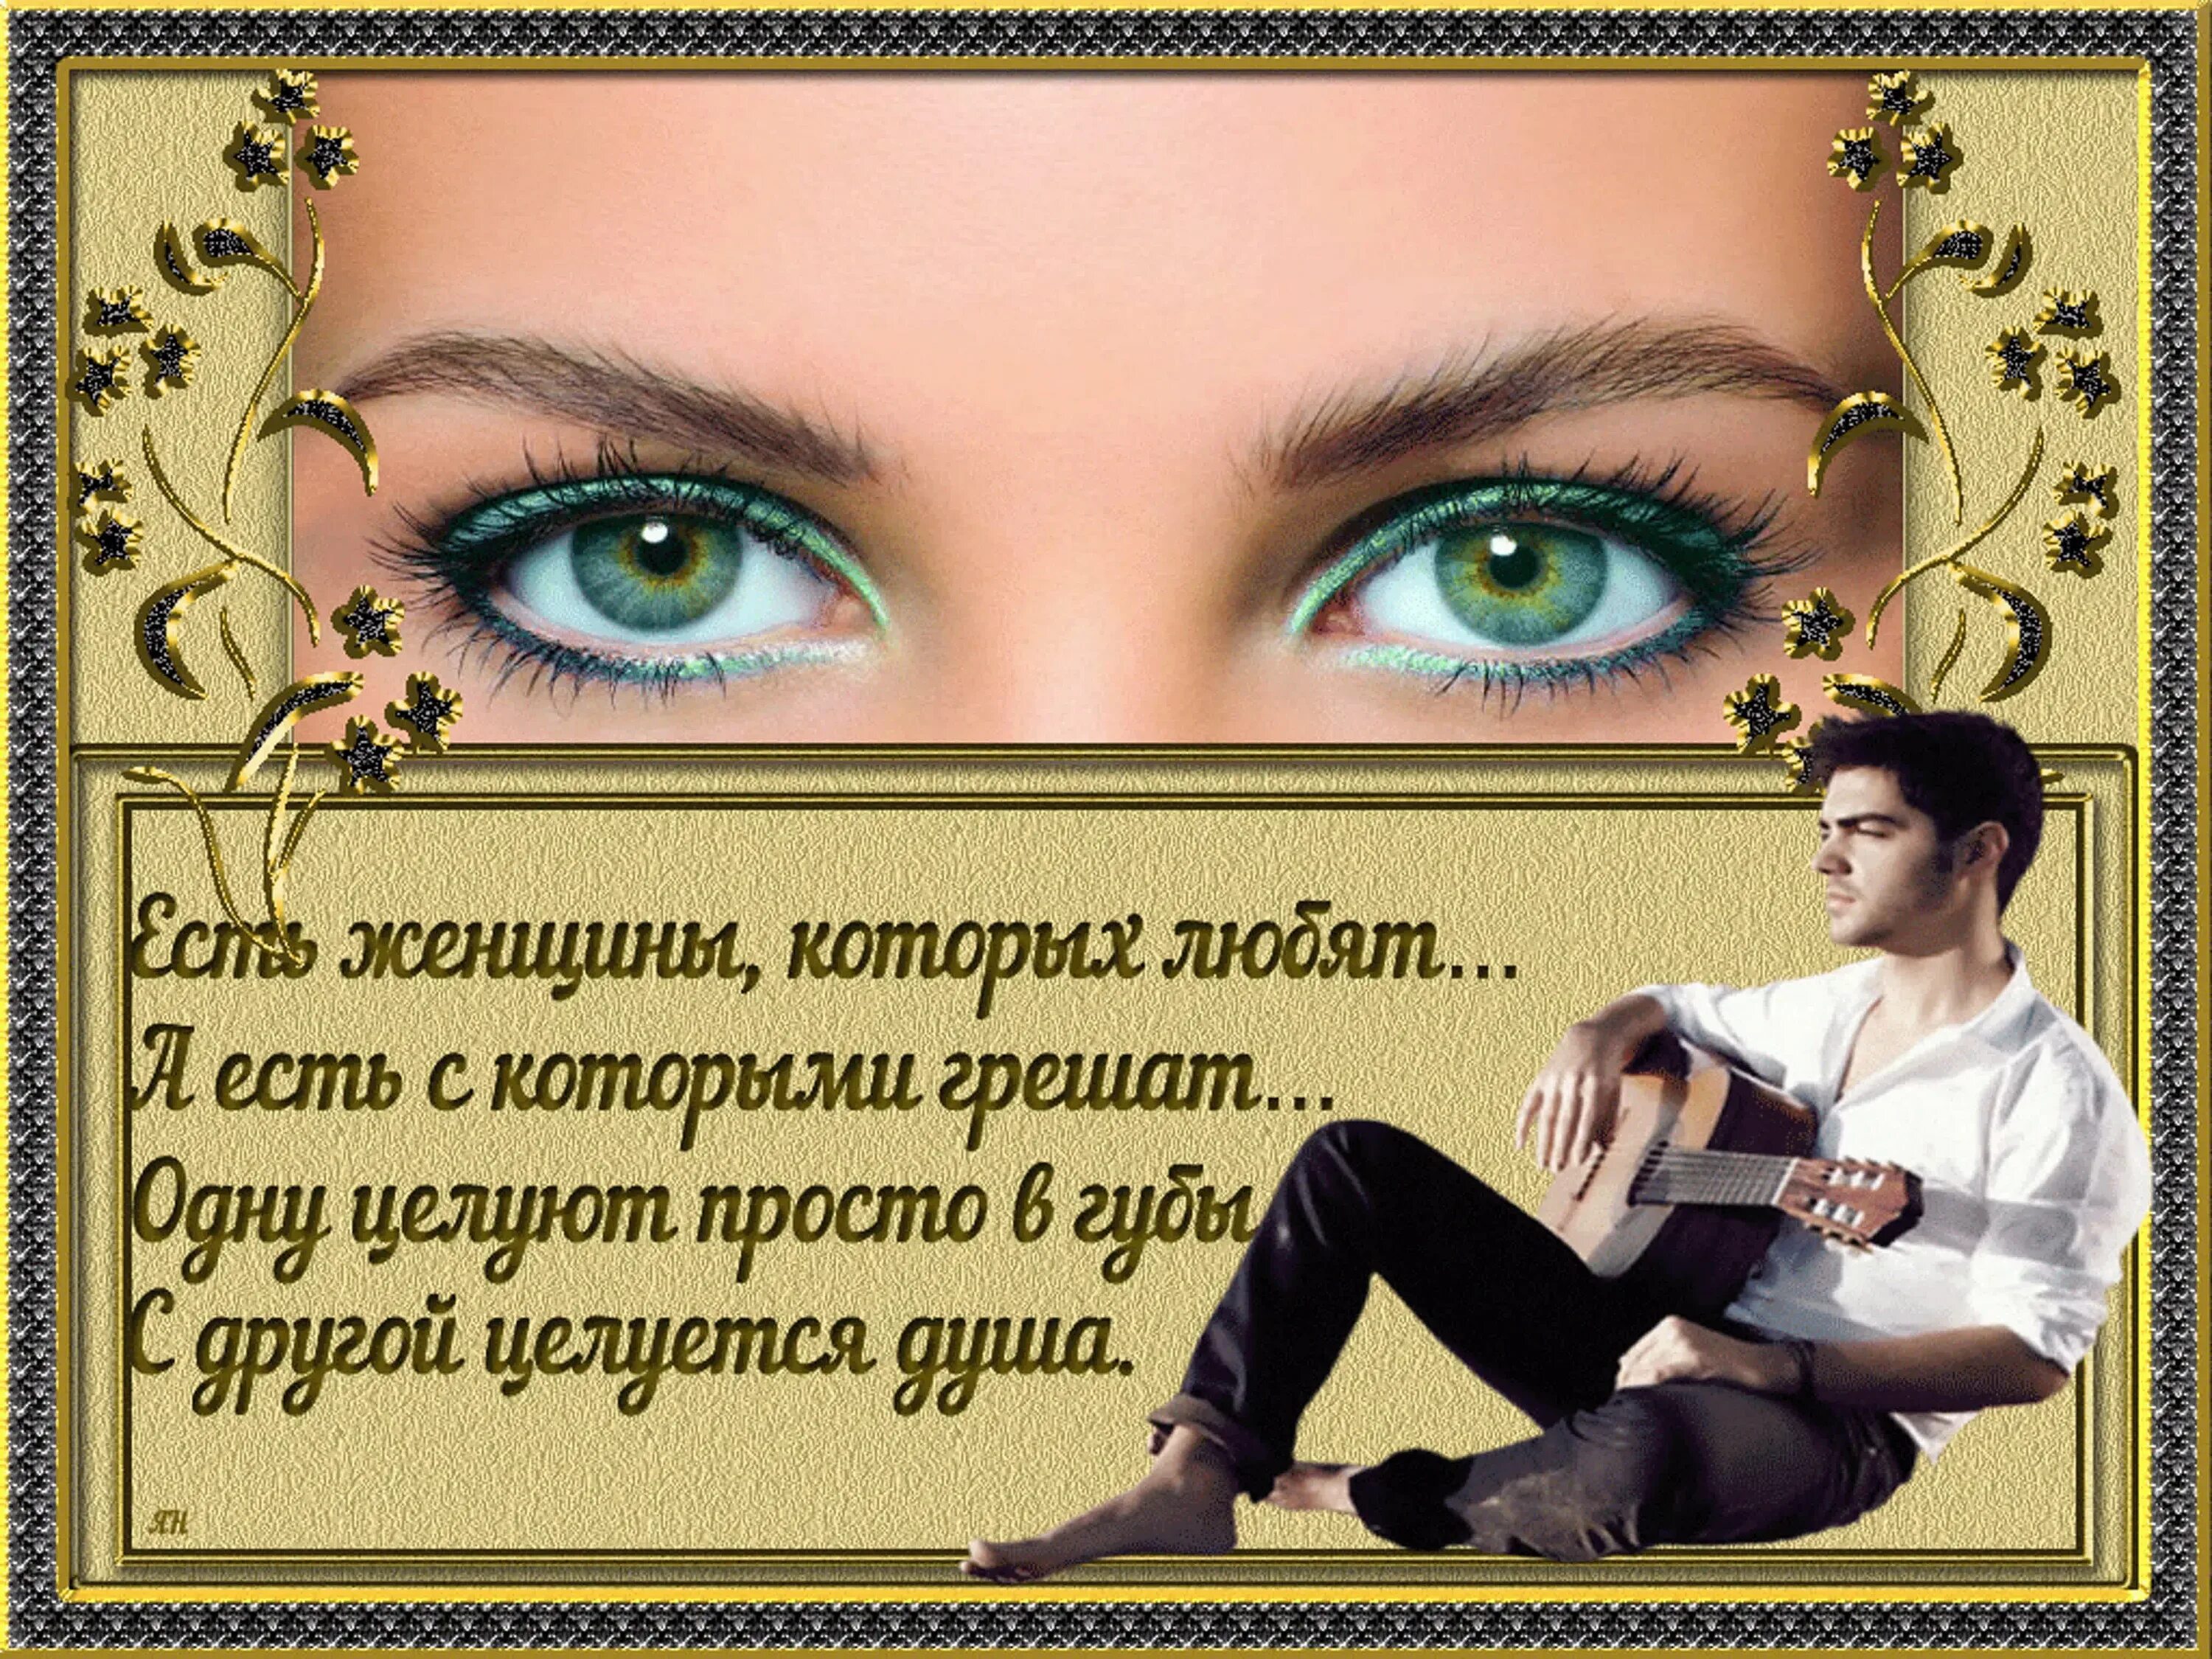 Пусть твои глазки. Стих про красивые глаза. Стихи про красивые женские глаза. Стихи про красивые глаза женщины. Стихи про женские глаза.